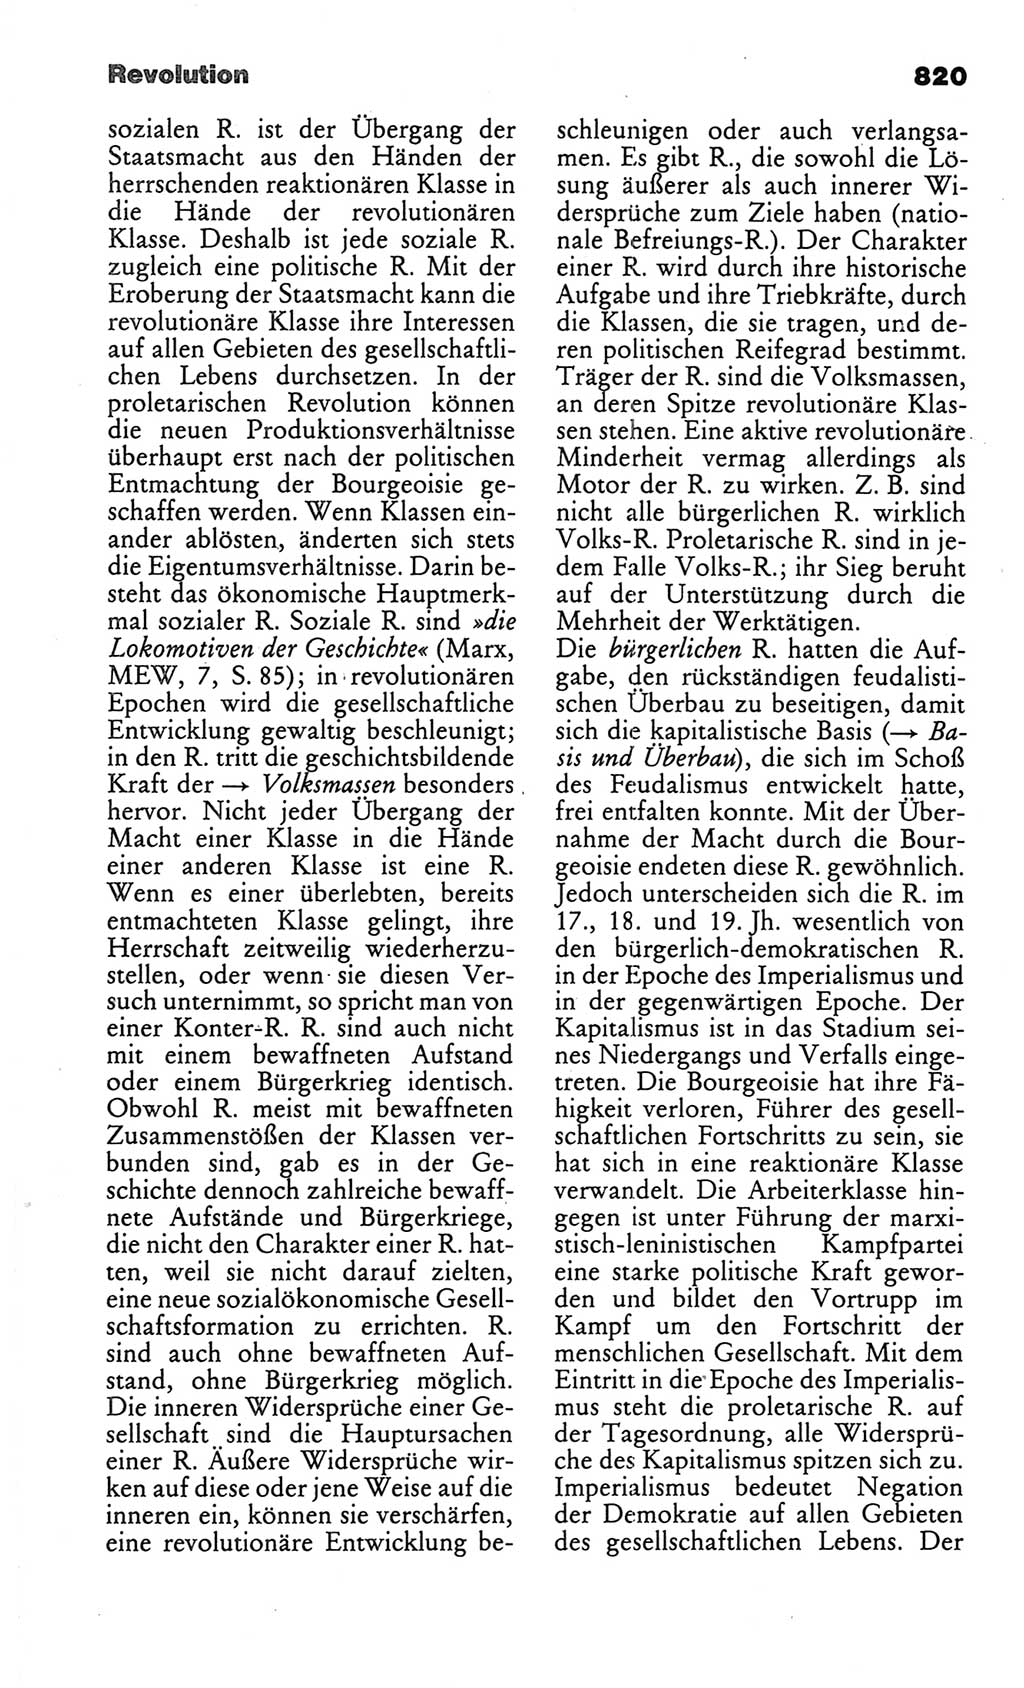 Kleines politisches Wörterbuch [Deutsche Demokratische Republik (DDR)] 1986, Seite 820 (Kl. pol. Wb. DDR 1986, S. 820)